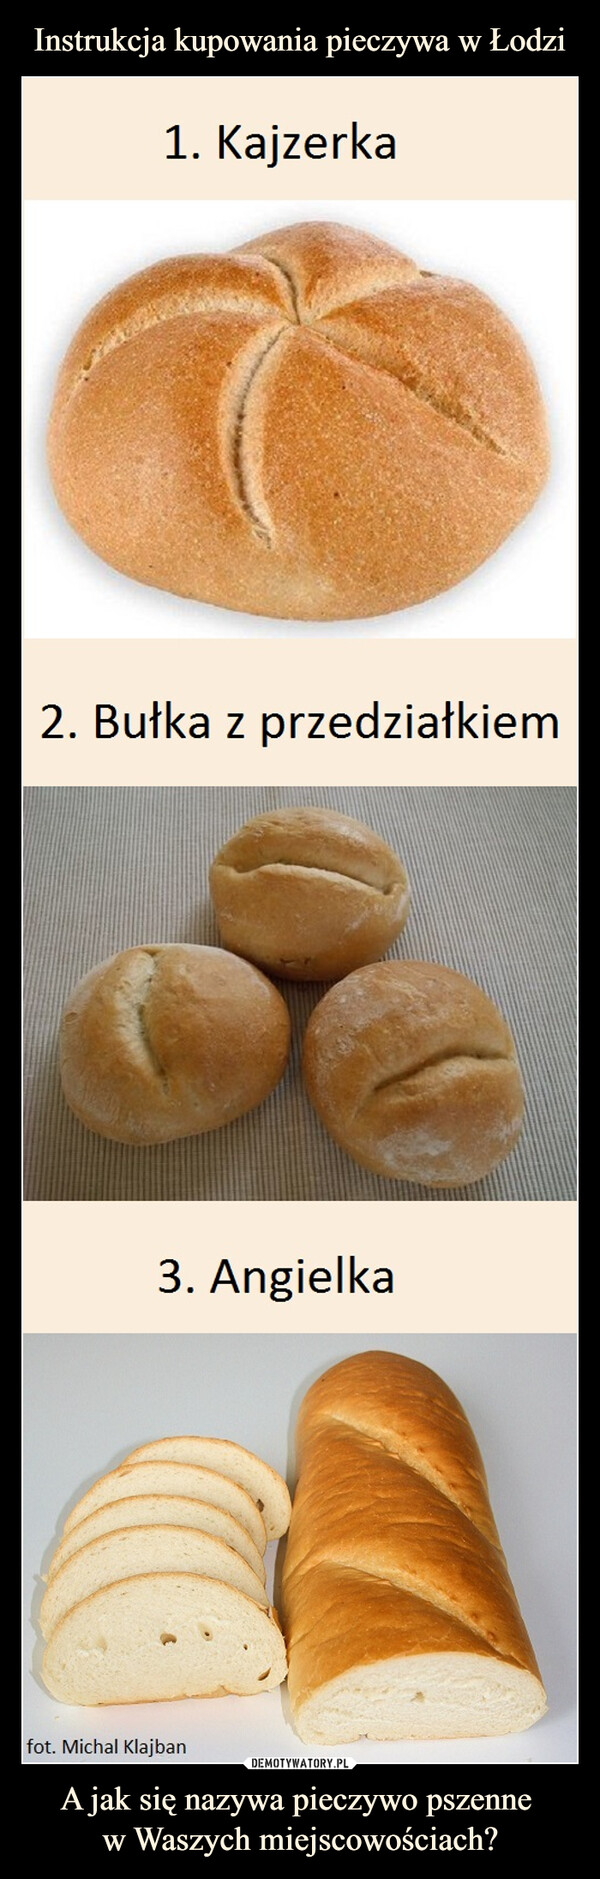 Instrukcja kupowania pieczywa w Łodzi A jak się nazywa pieczywo pszenne 
w Waszych miejscowościach?